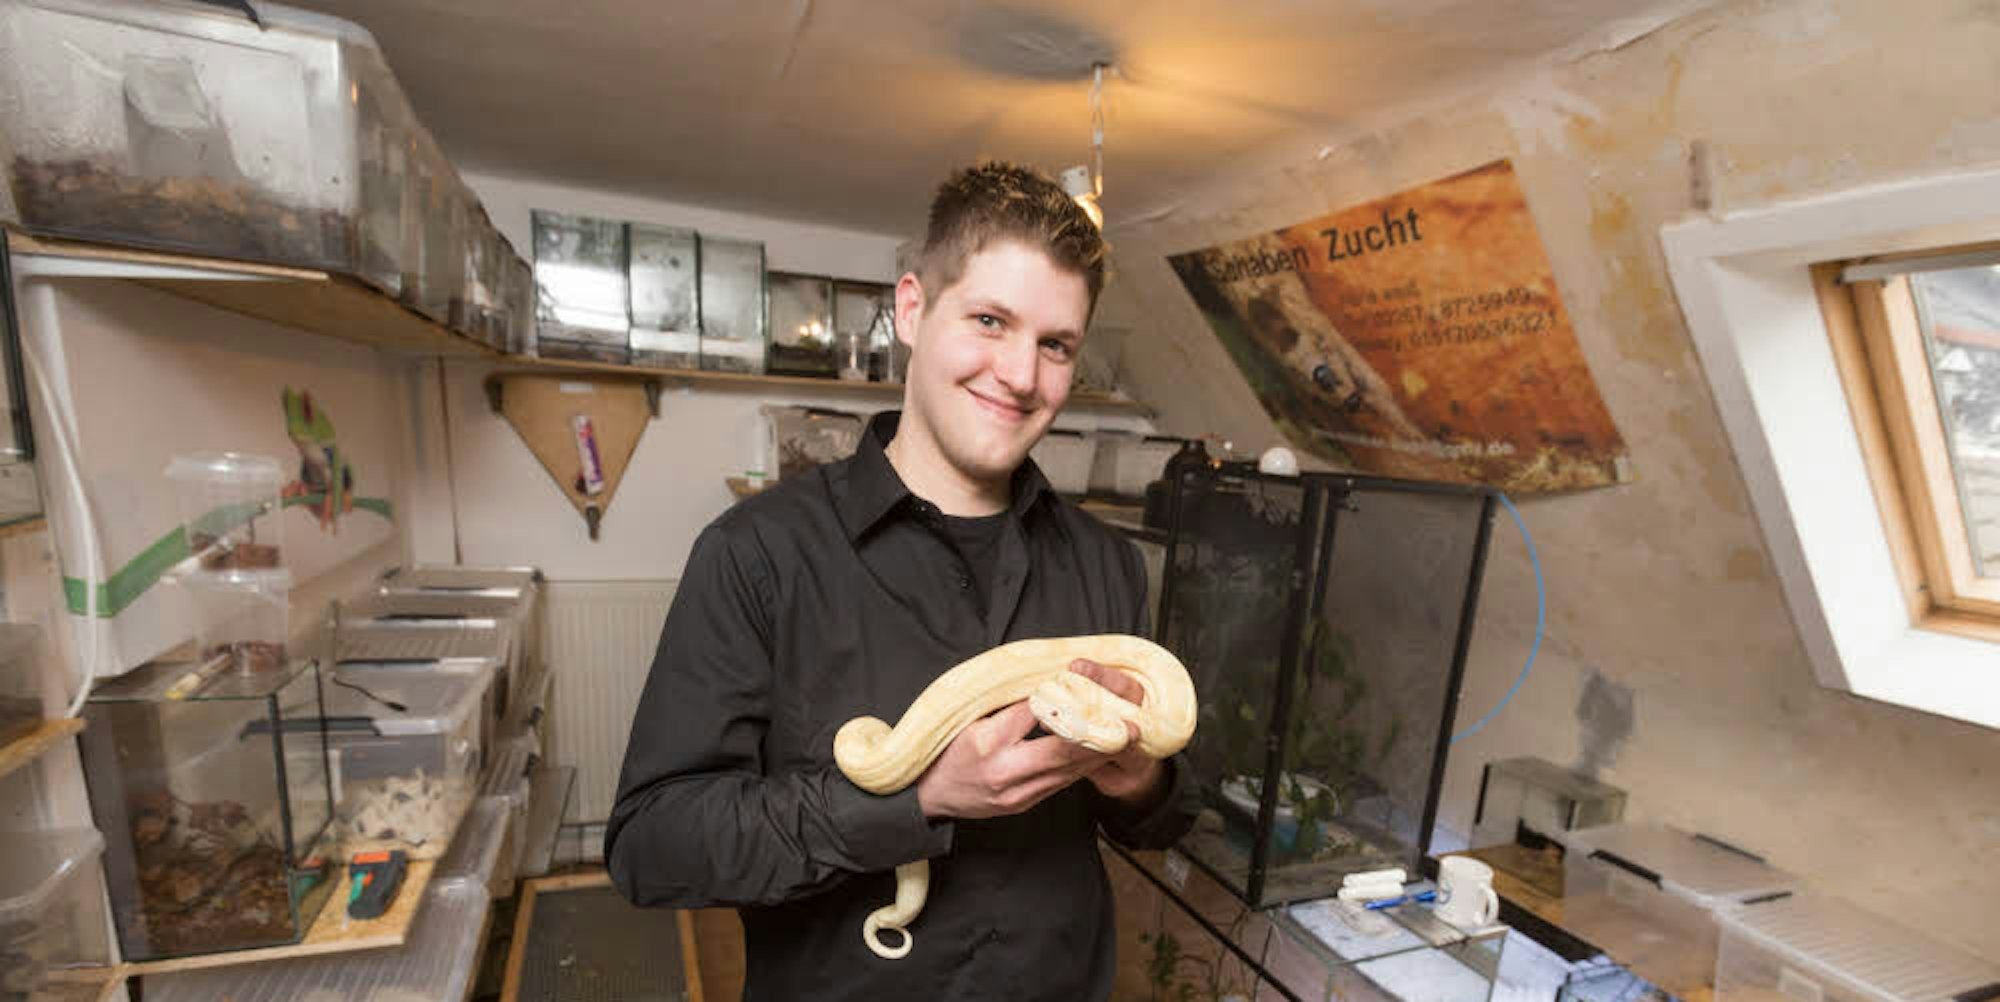 Züchter René Weiß mit einer Boa Constrictor in seiner Wohnung. Das Hobby nimmt viel Platz ein.